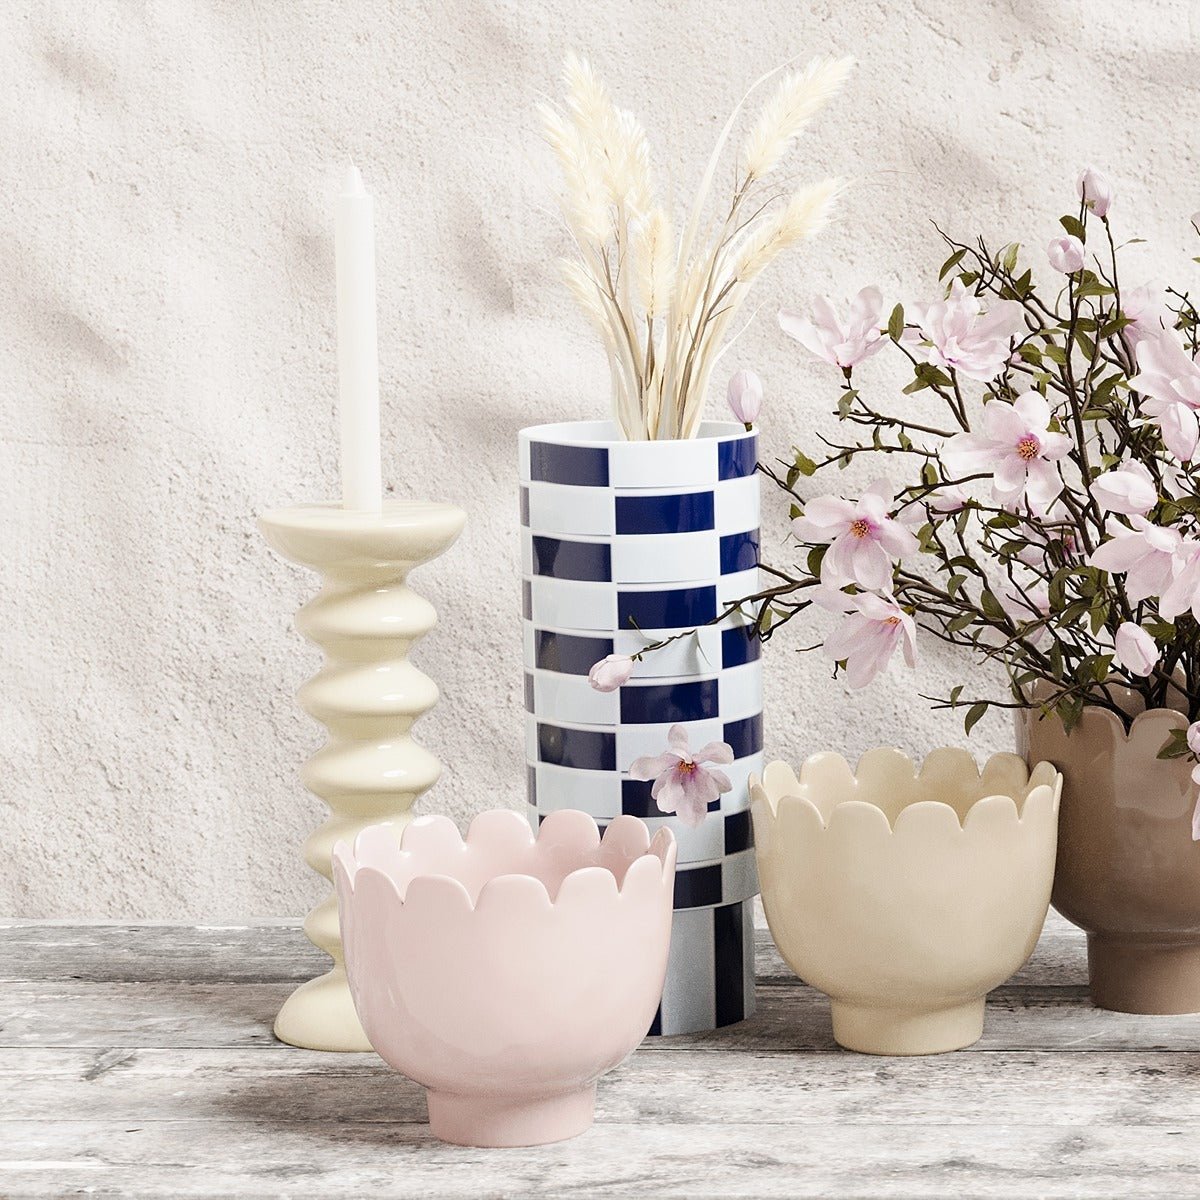 Le vase céramique marine et blanc et son motif géométrique à damier permet toutes les associations, de style bohème ou moderne